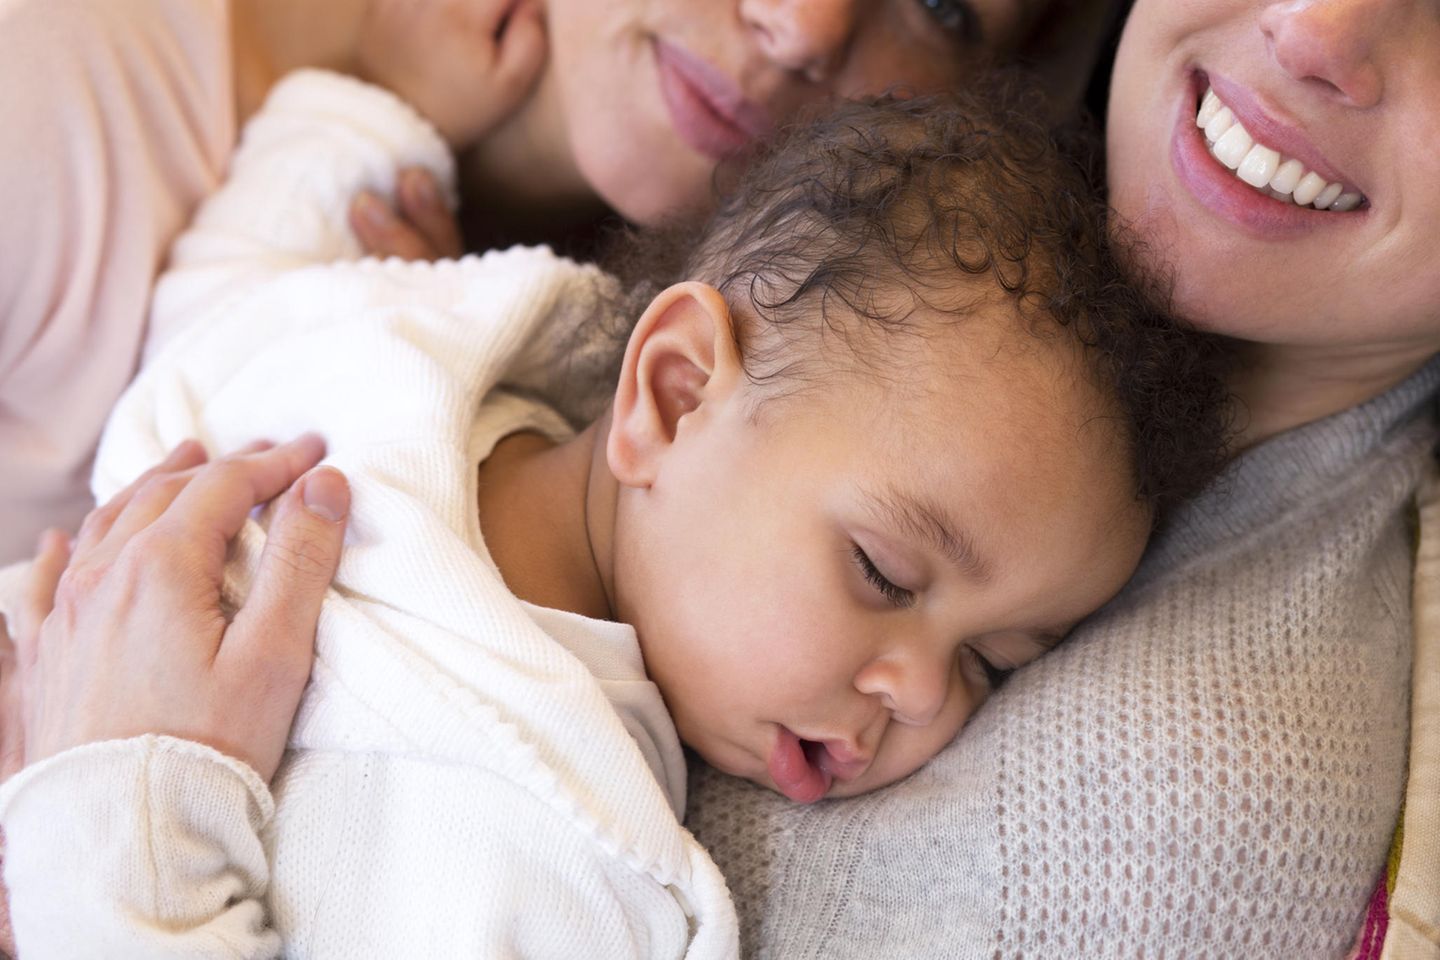 Stiefkindadoption: Zwei Mütter mit ihrem schlafenden Baby auf dem Arm